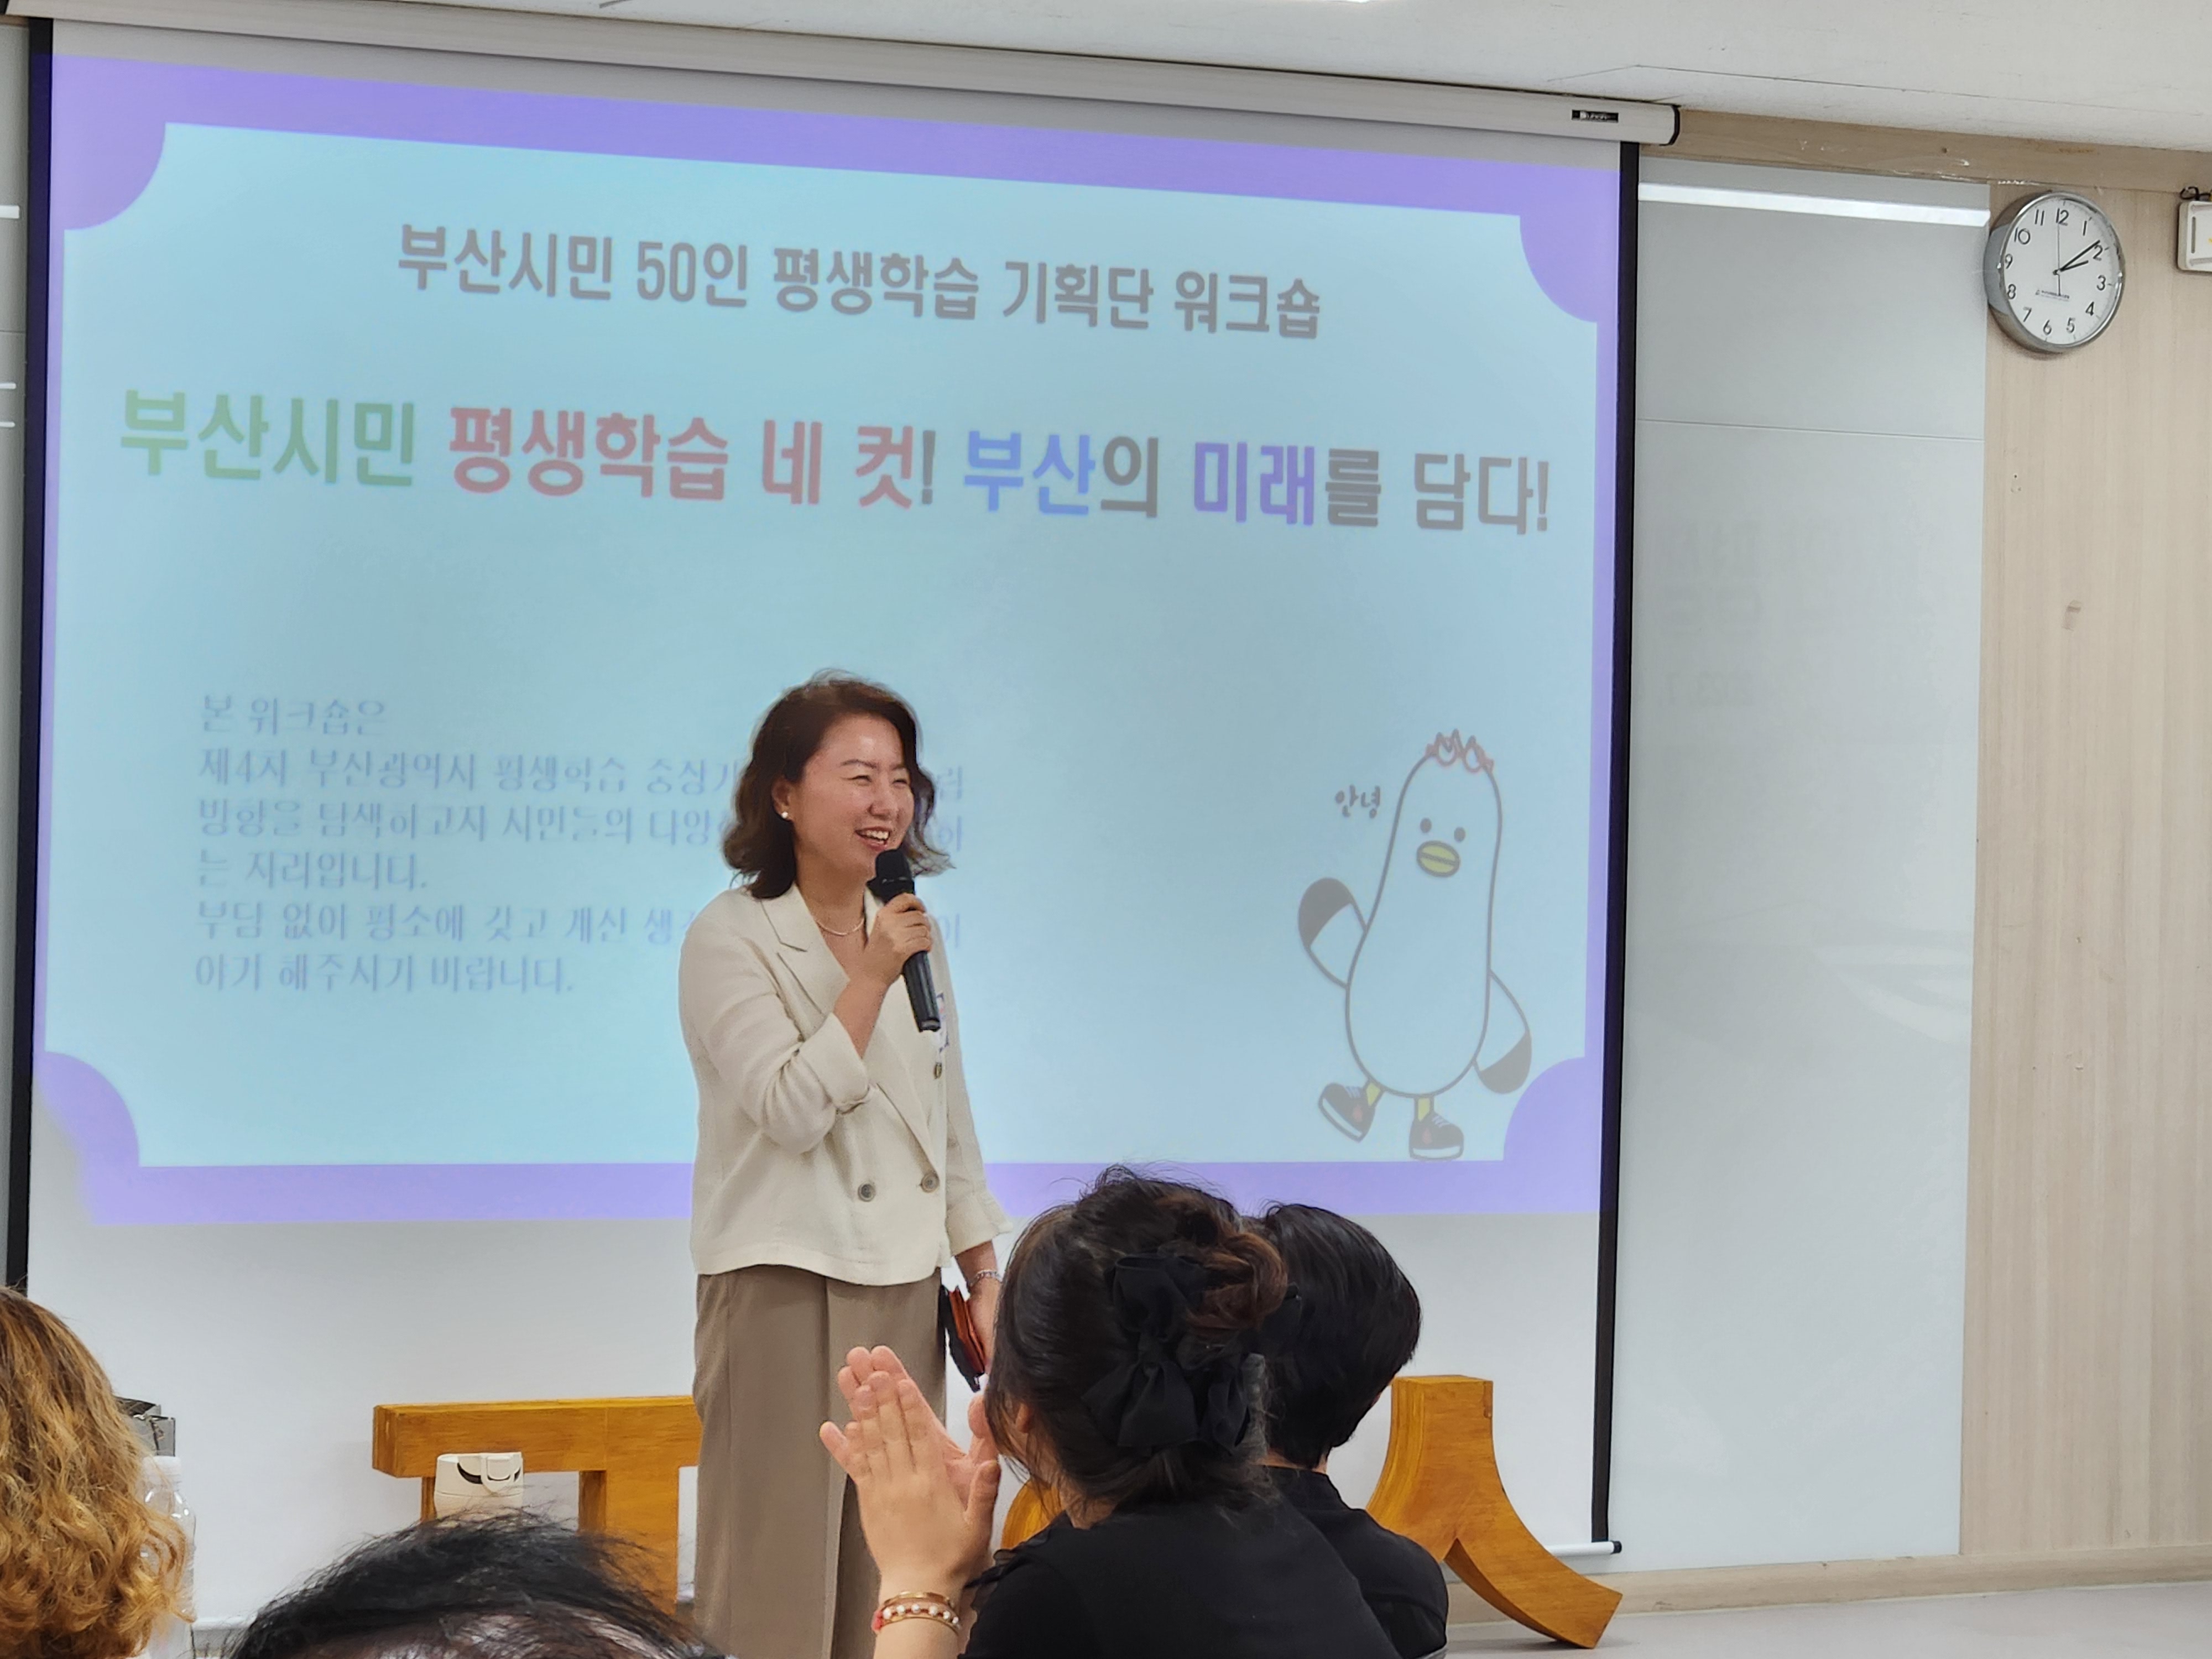 부산시민 50인 평생학습기획단 워크숍 개최(7.4)